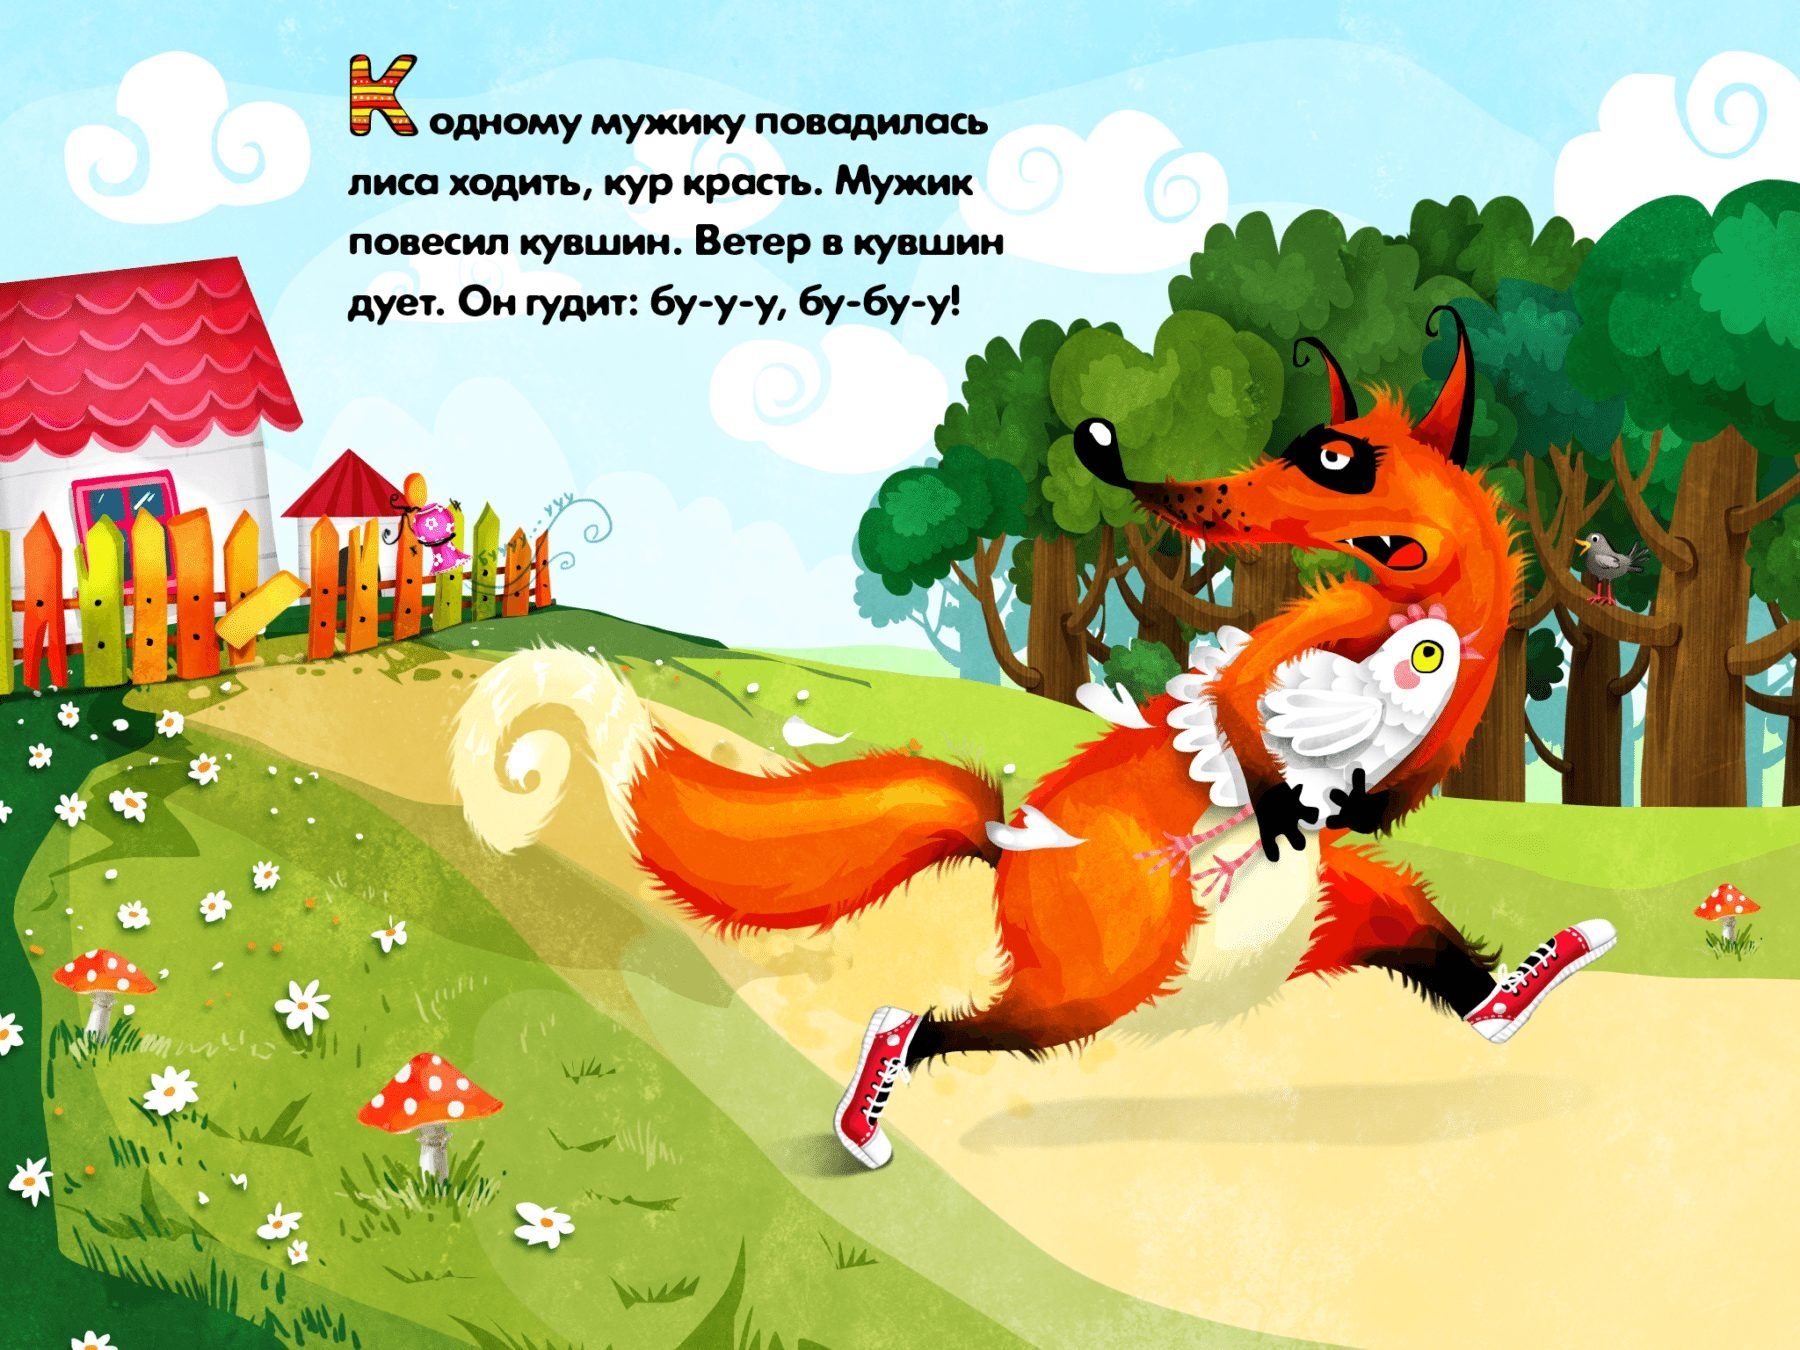 Произведения про лису. Сказки про лису. Сказки про лисичку для детей. Сказочная лиса. Сказки про лису русские народные.